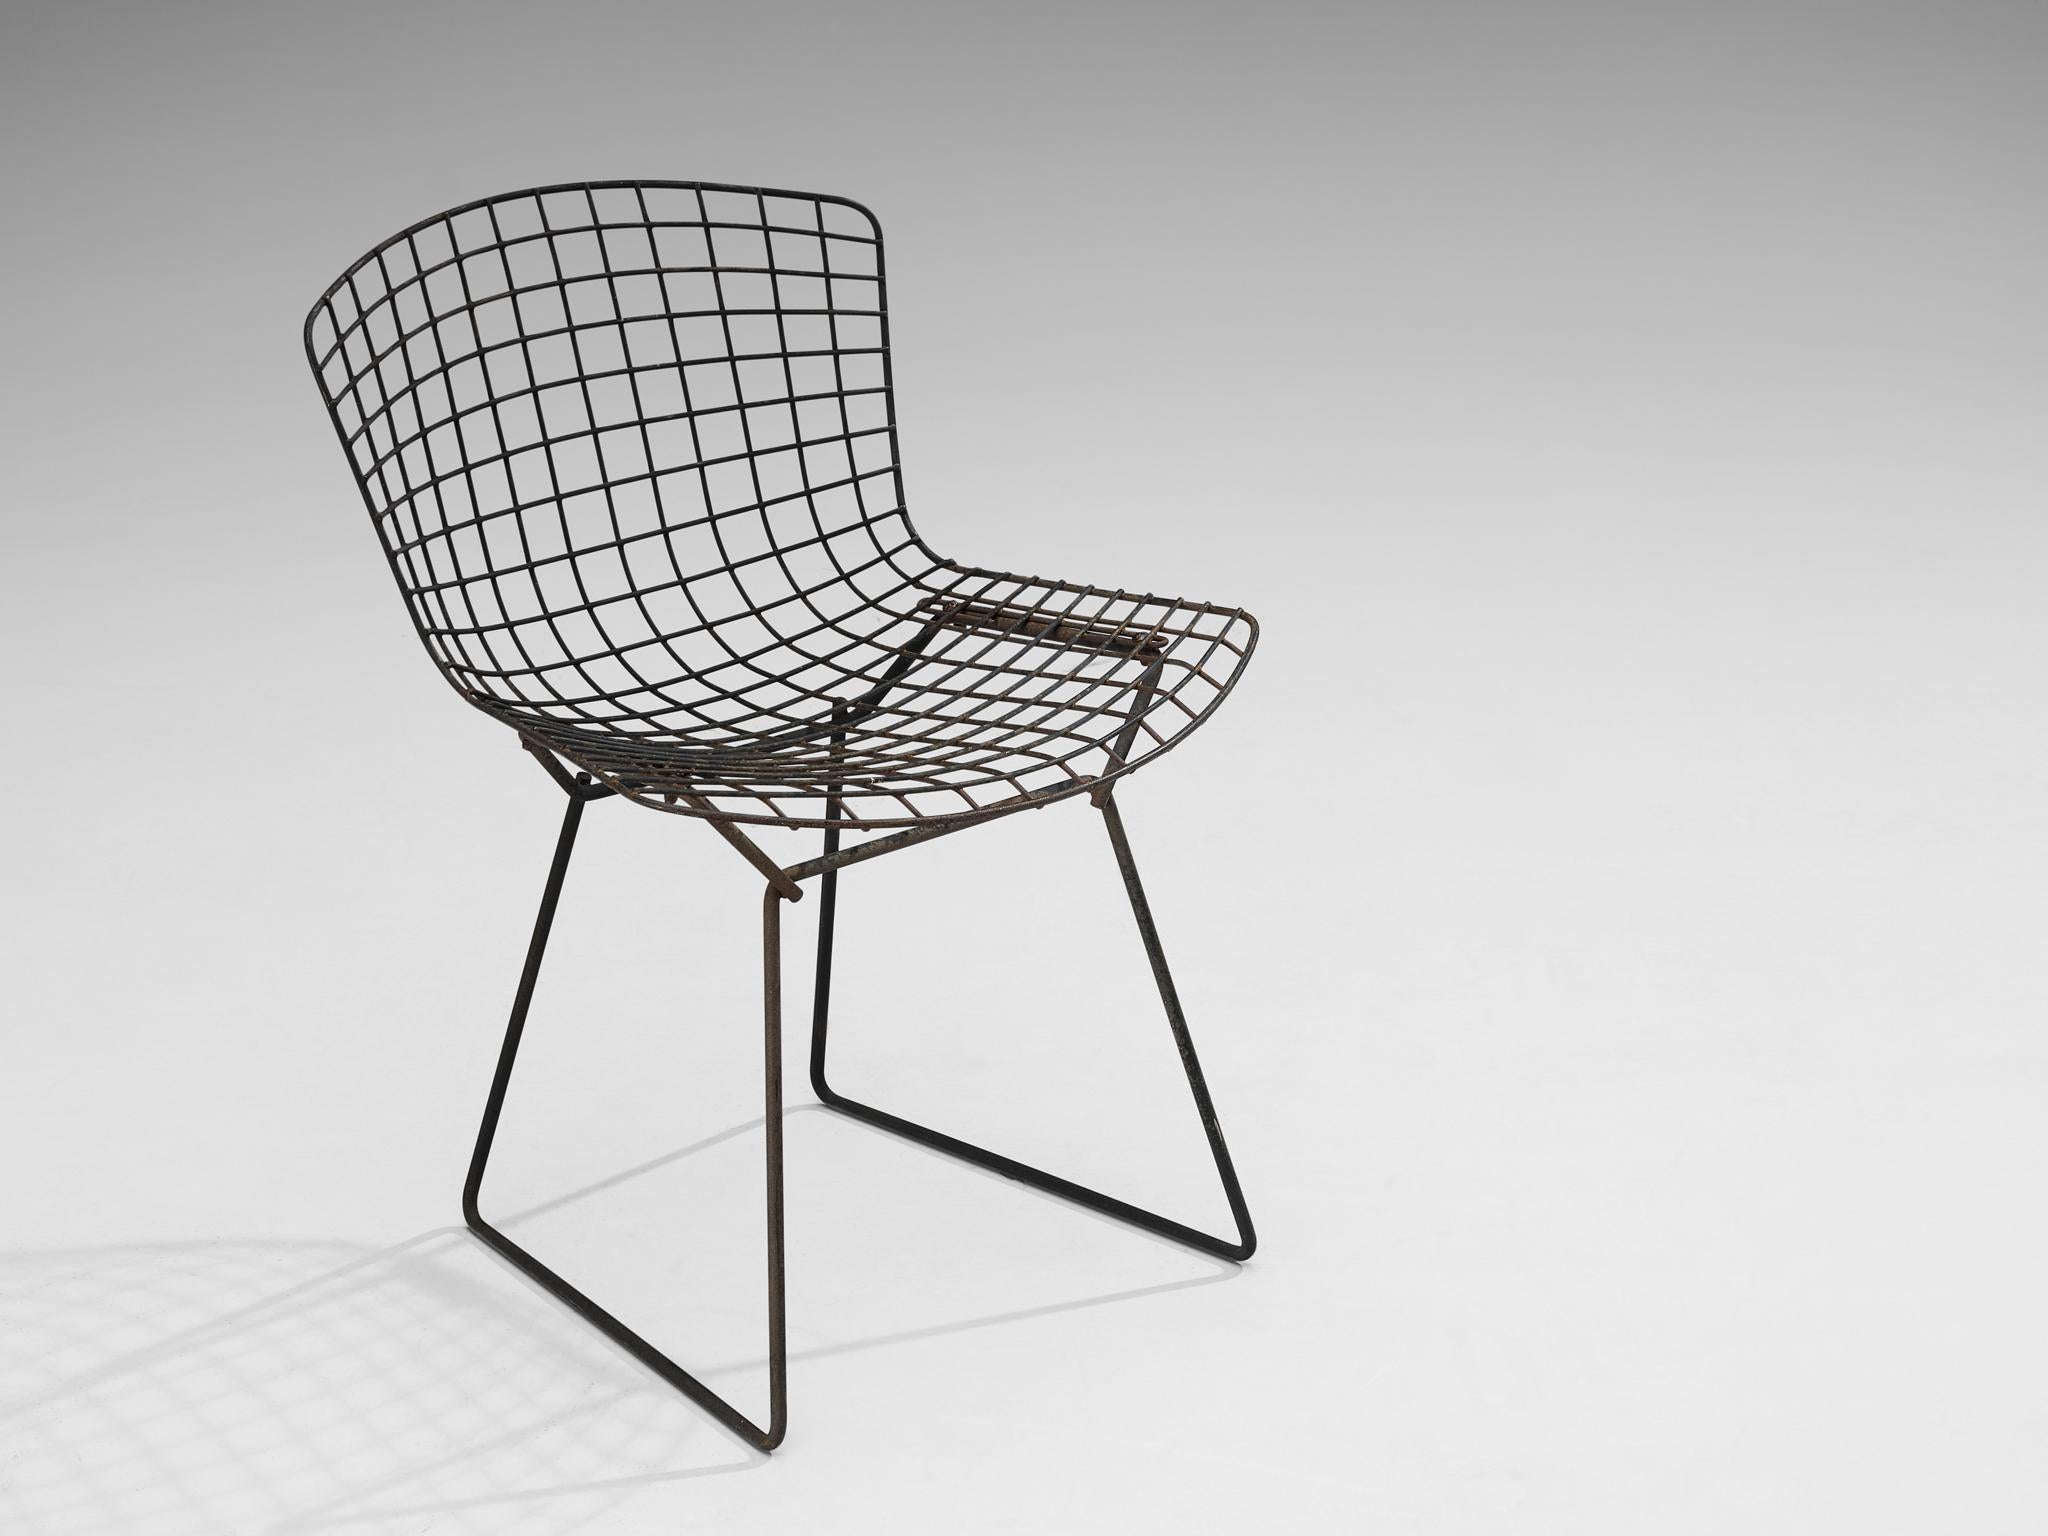 Harry Bertoia pour Knoll International, 'side chair', acier revêtu, États-Unis, design 1952

Cette chaise de terrasse 